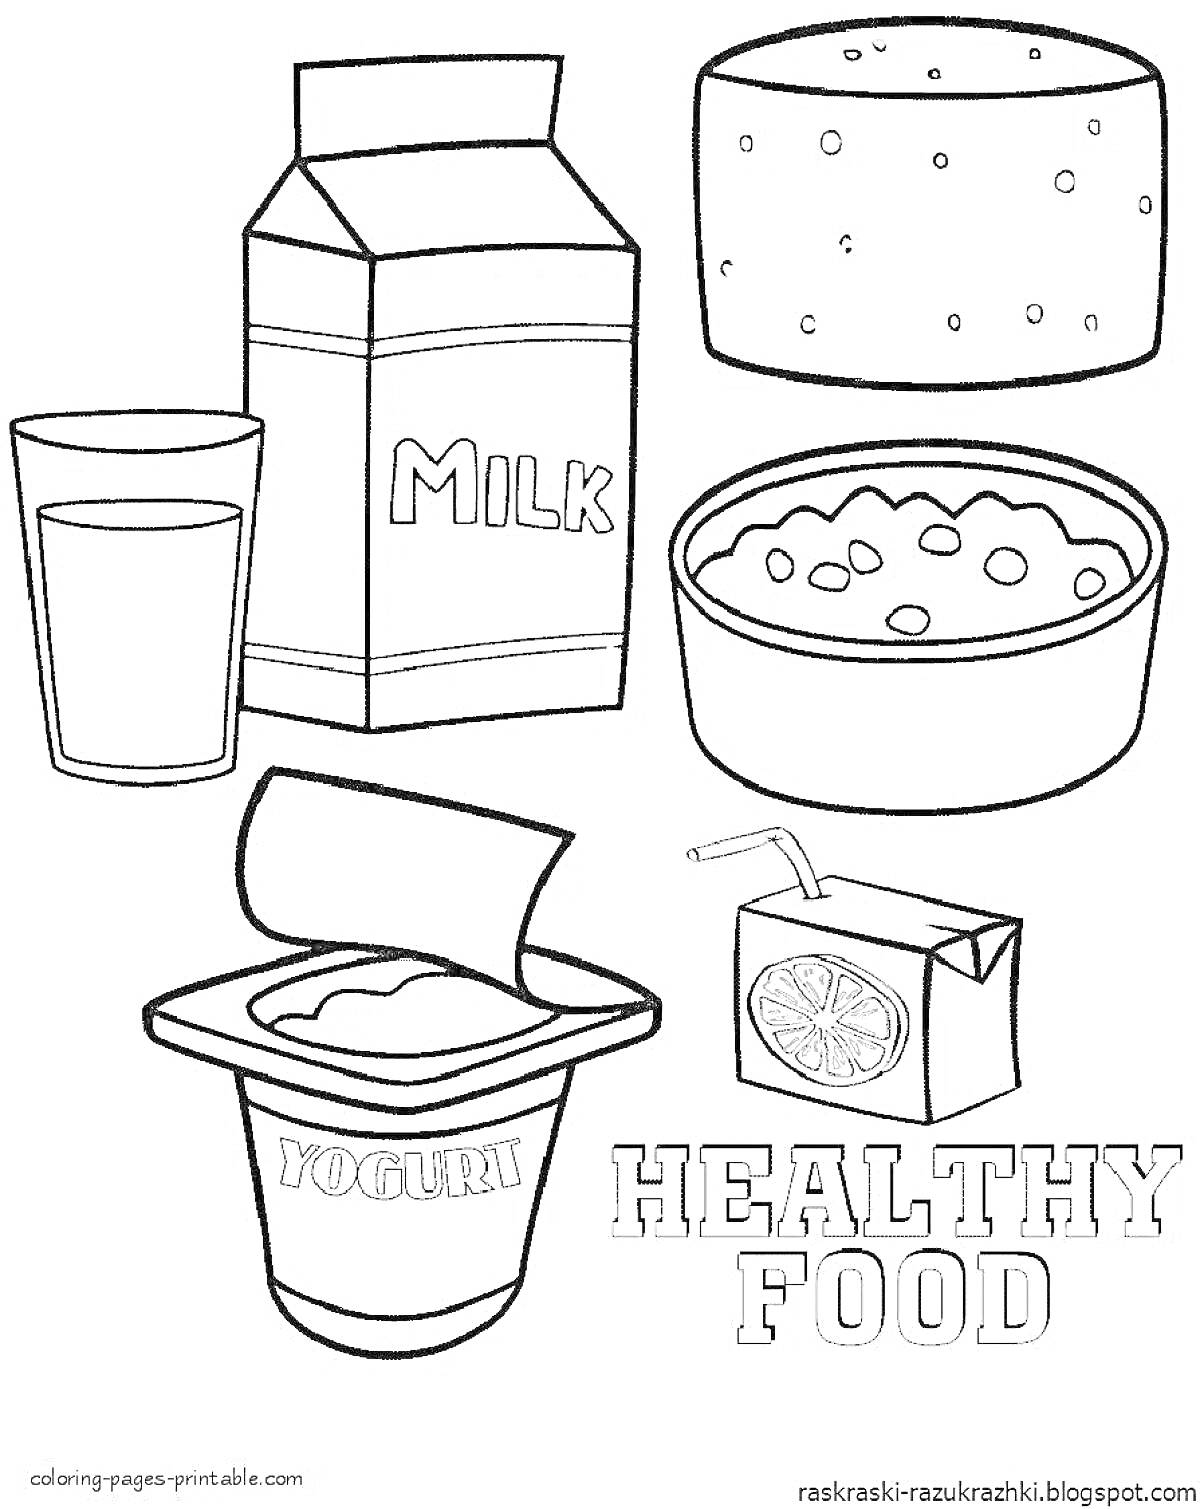 Раскраска молоко, стакан с молоком, сыр, миска с хлопьями, йогурт, сок в коробке с трубочкой, надпись 